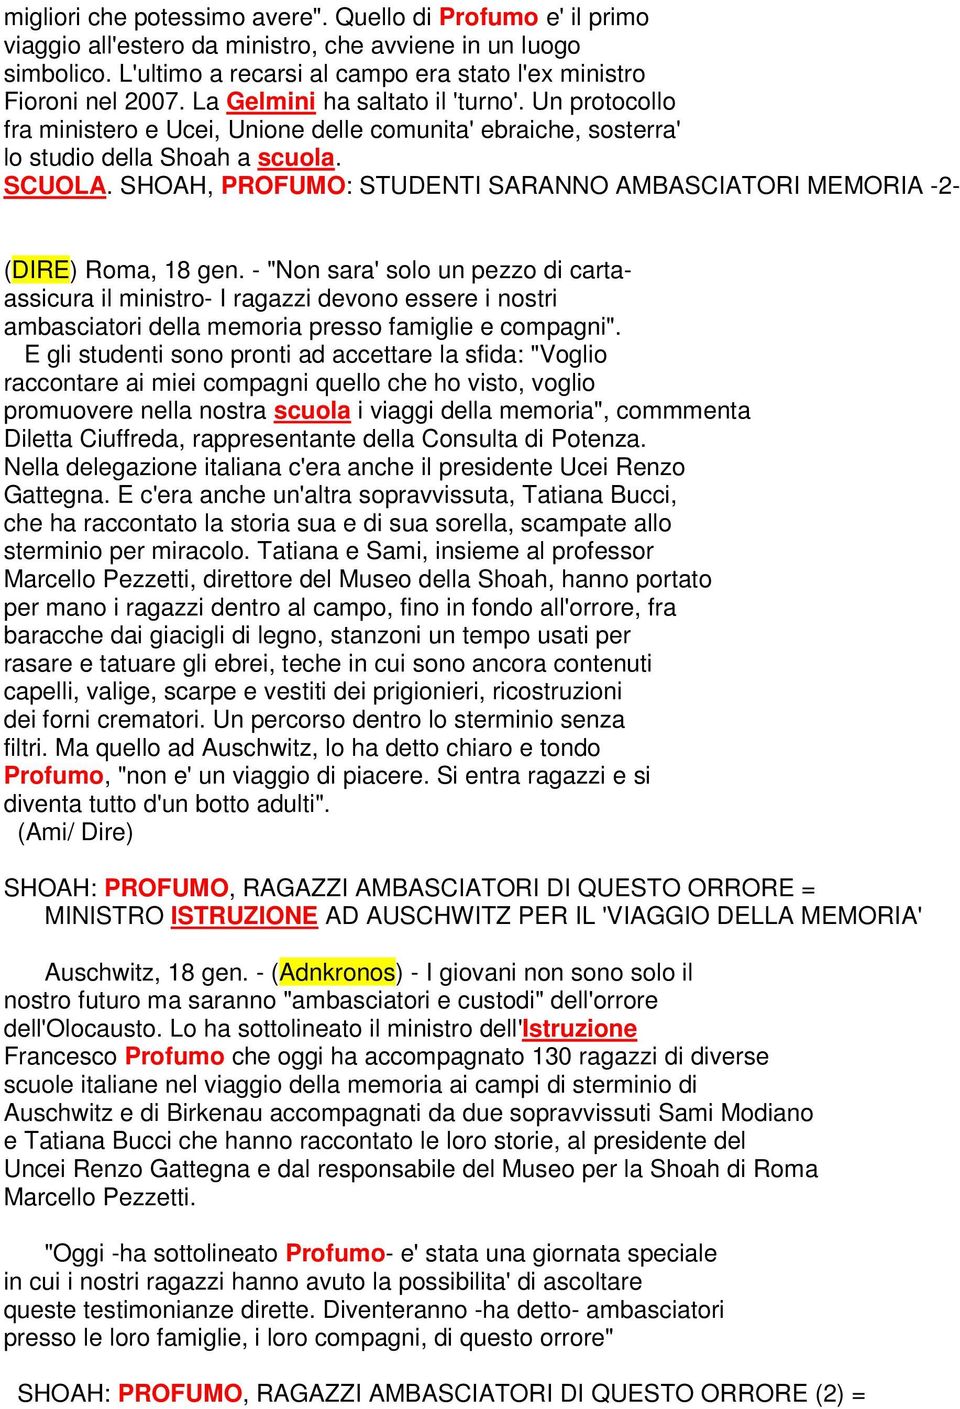 SHOAH, PROFUMO: STUDENTI SARANNO AMBASCIATORI MEMORIA -2- (DIRE) Roma, 18 gen.